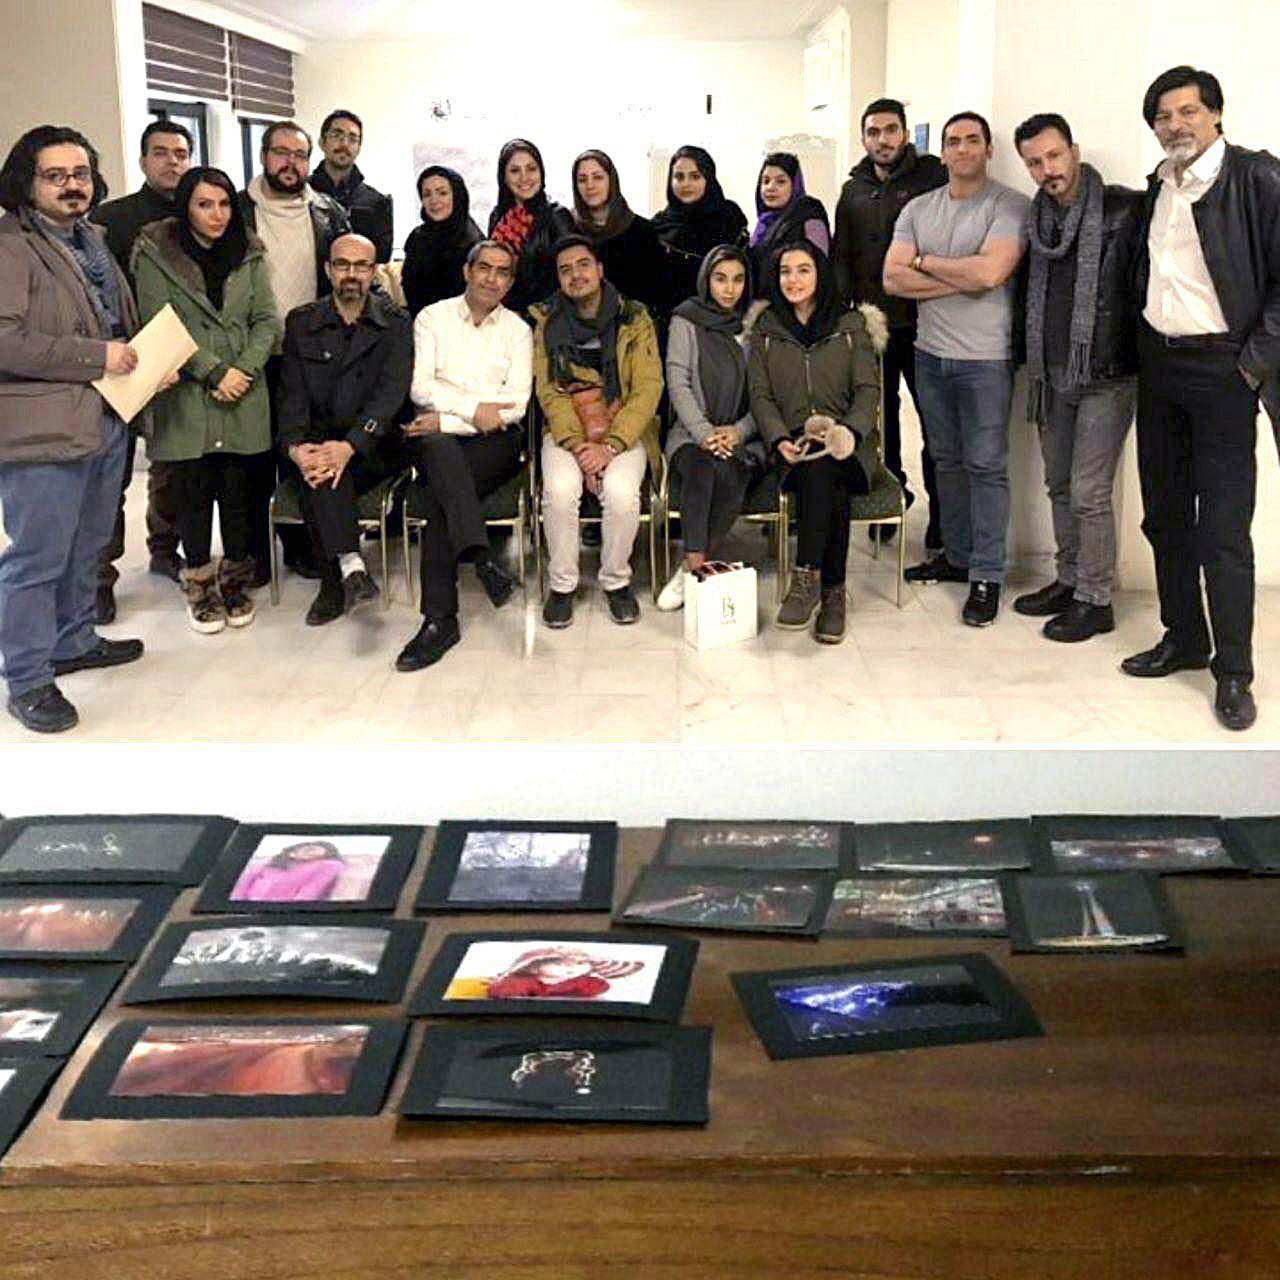 ژوژمان دوره دوم کلاس آموزش عکاسی استاد نوری مقدم  کمیسیون آموزش اتحادیه عکاسان و فیلمبرداران تهران